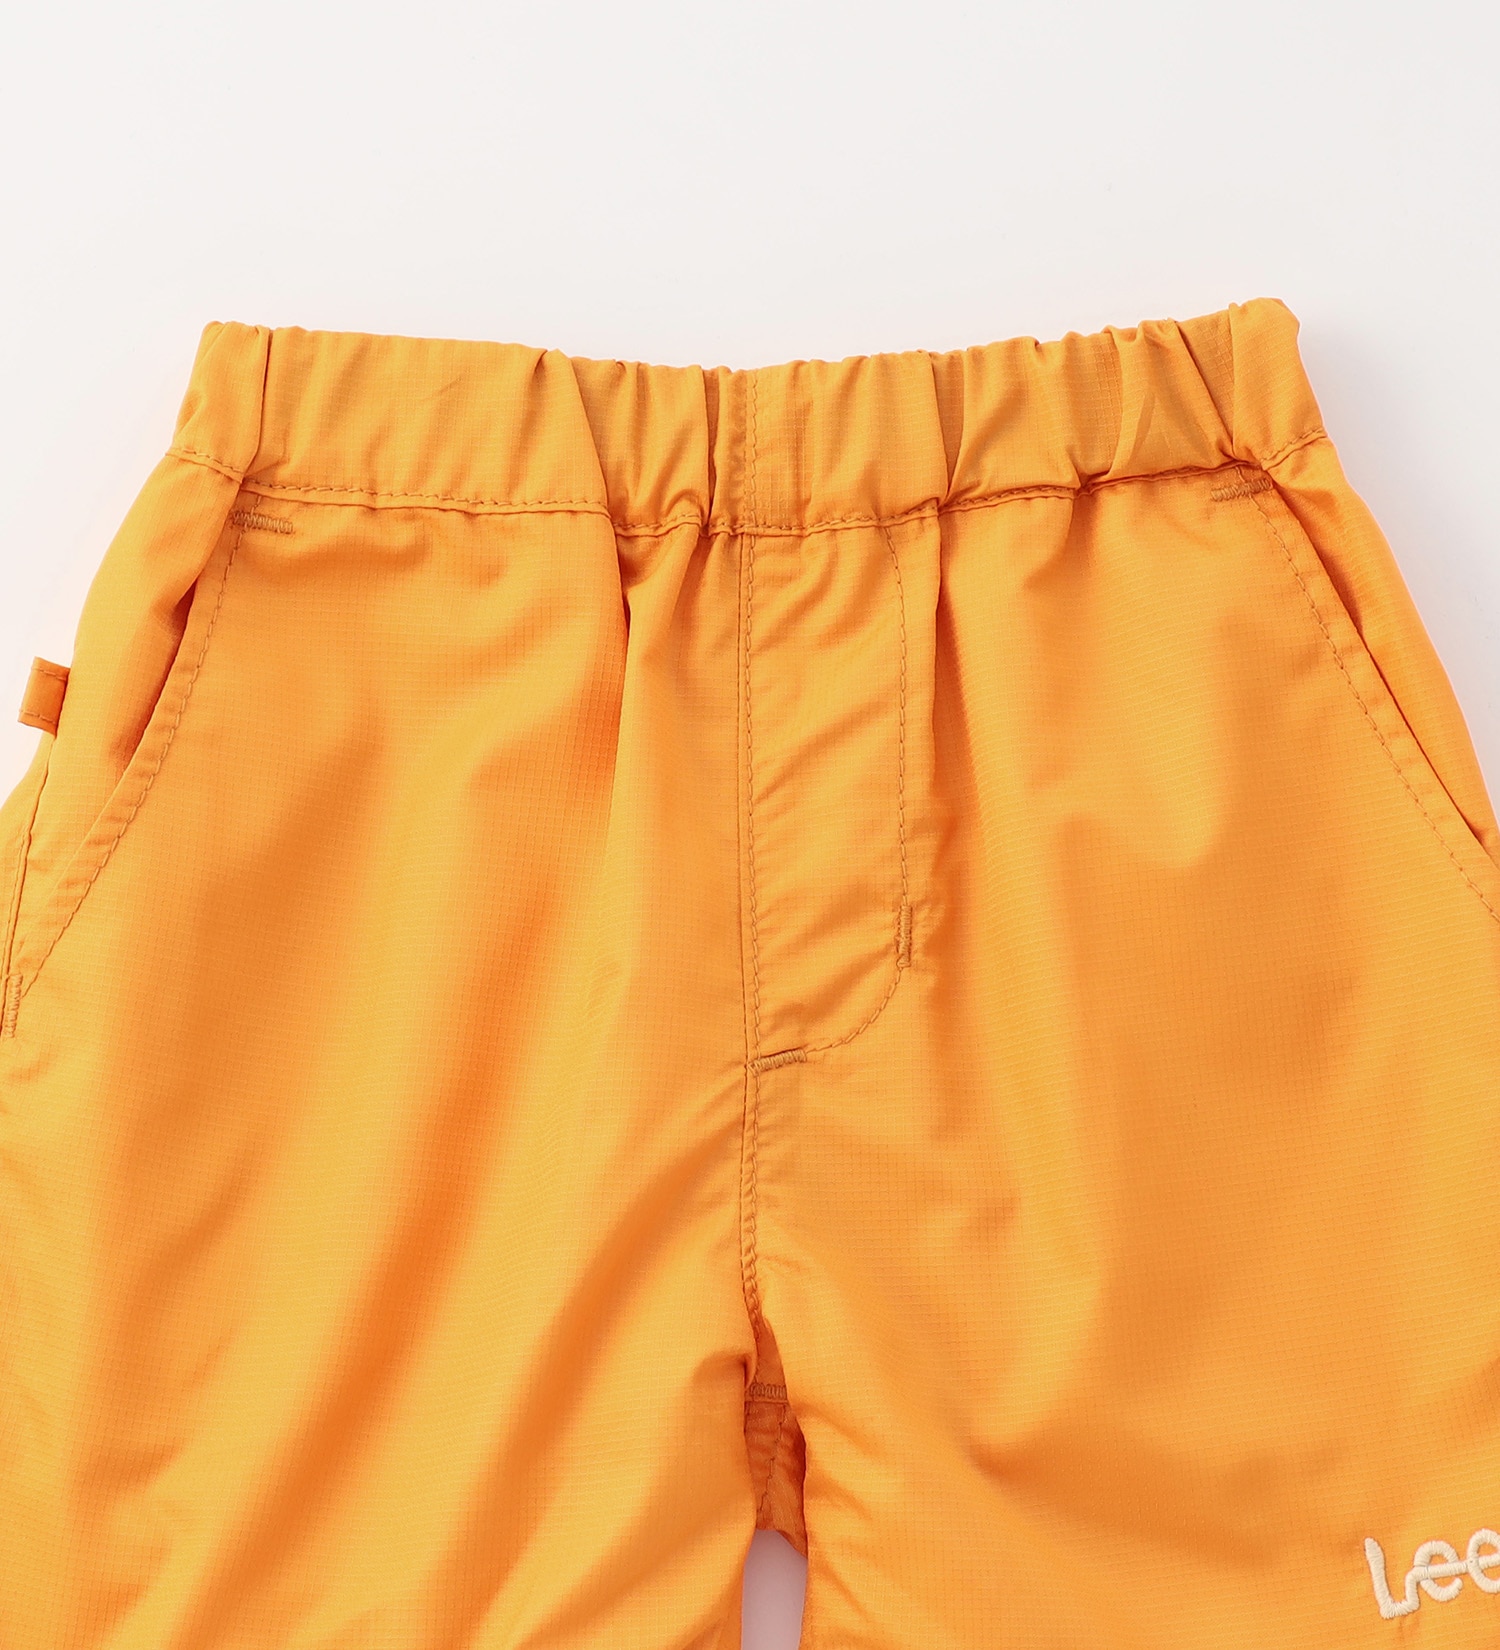 Lee(リー)の【80/90cm】ベビー アスレチックショーツ|パンツ/パンツ/キッズ|オレンジ